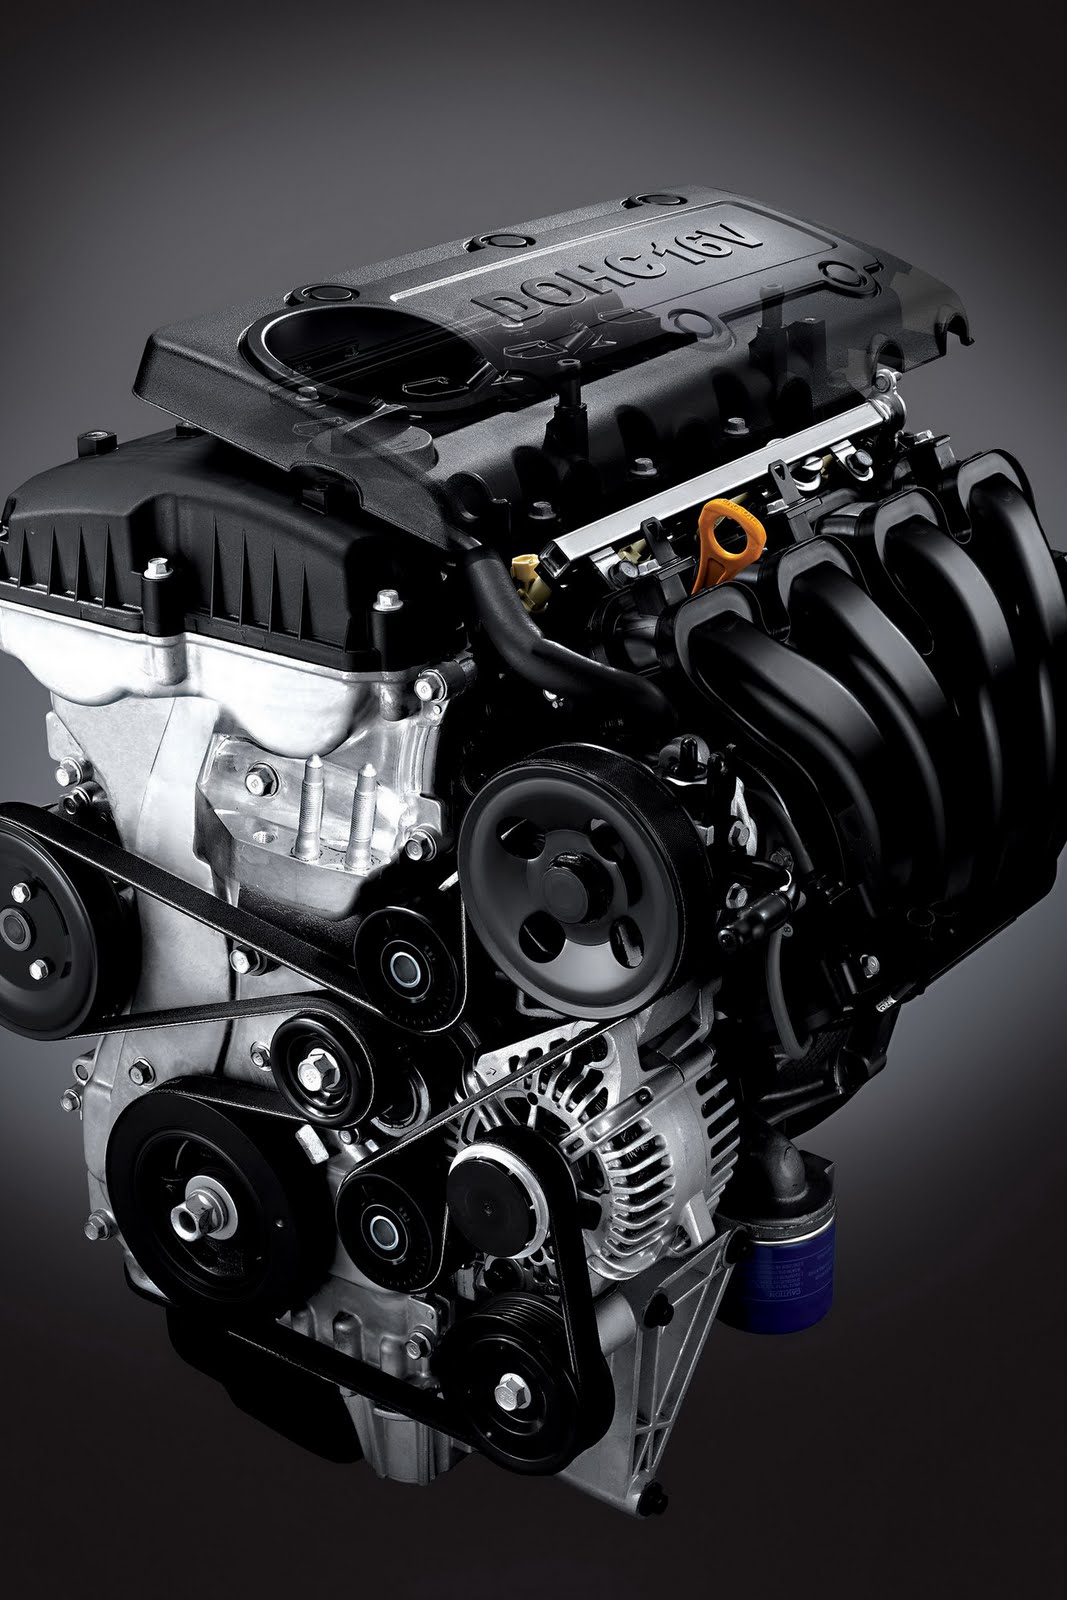 2.2 л 150 л с дизель. Мотор 2.4 Хендай Соната. Двигатель Хендай Соната 2011. ДВС Hyundai Sonata 2.0 2011. Двигатель Хендай Соната 2.0.